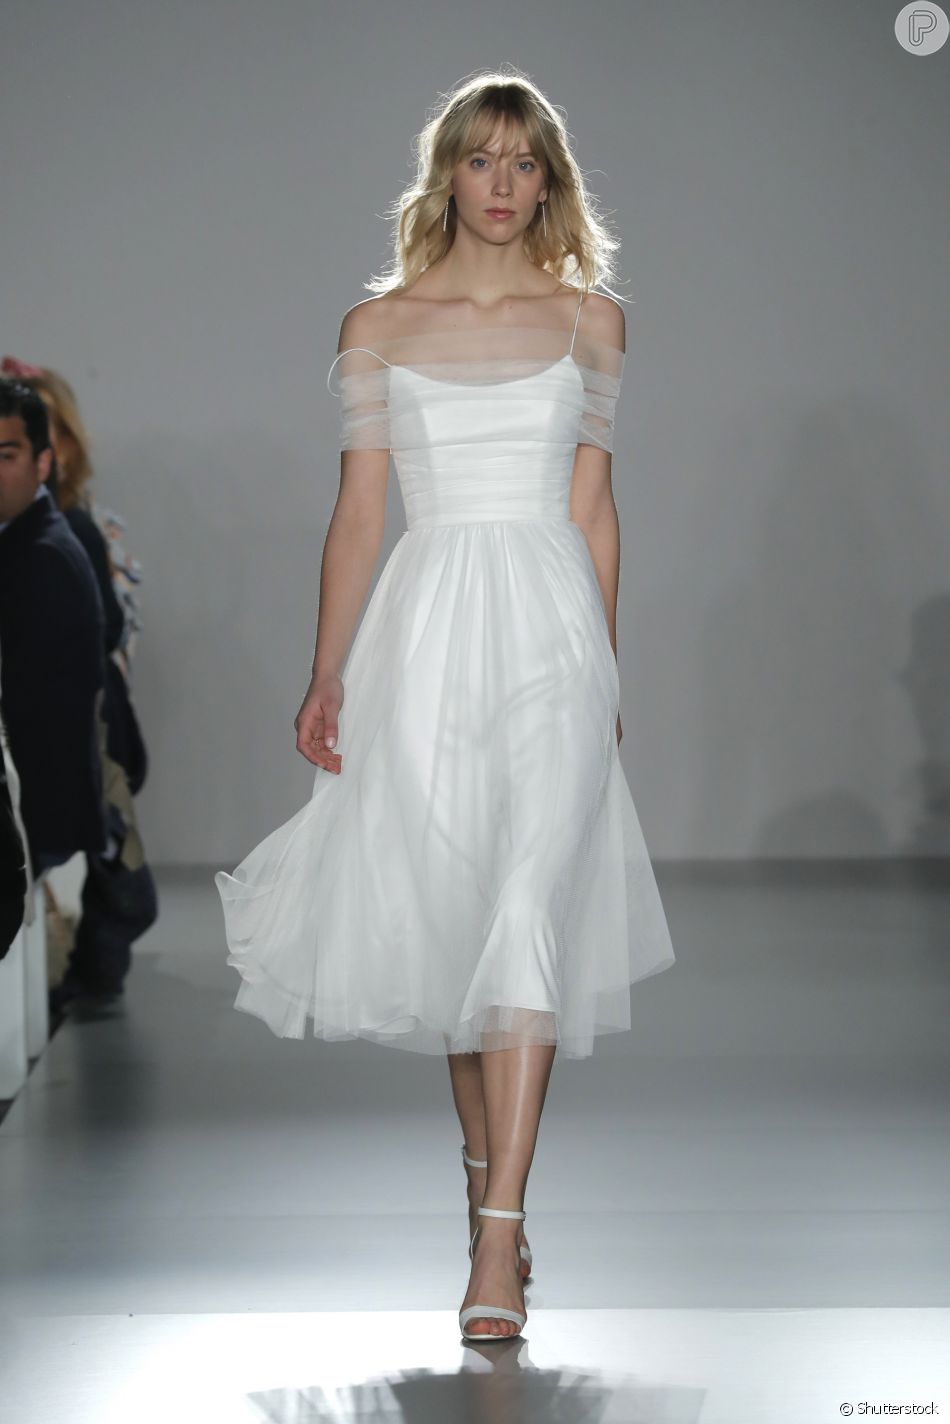 vestido branco com detalhes